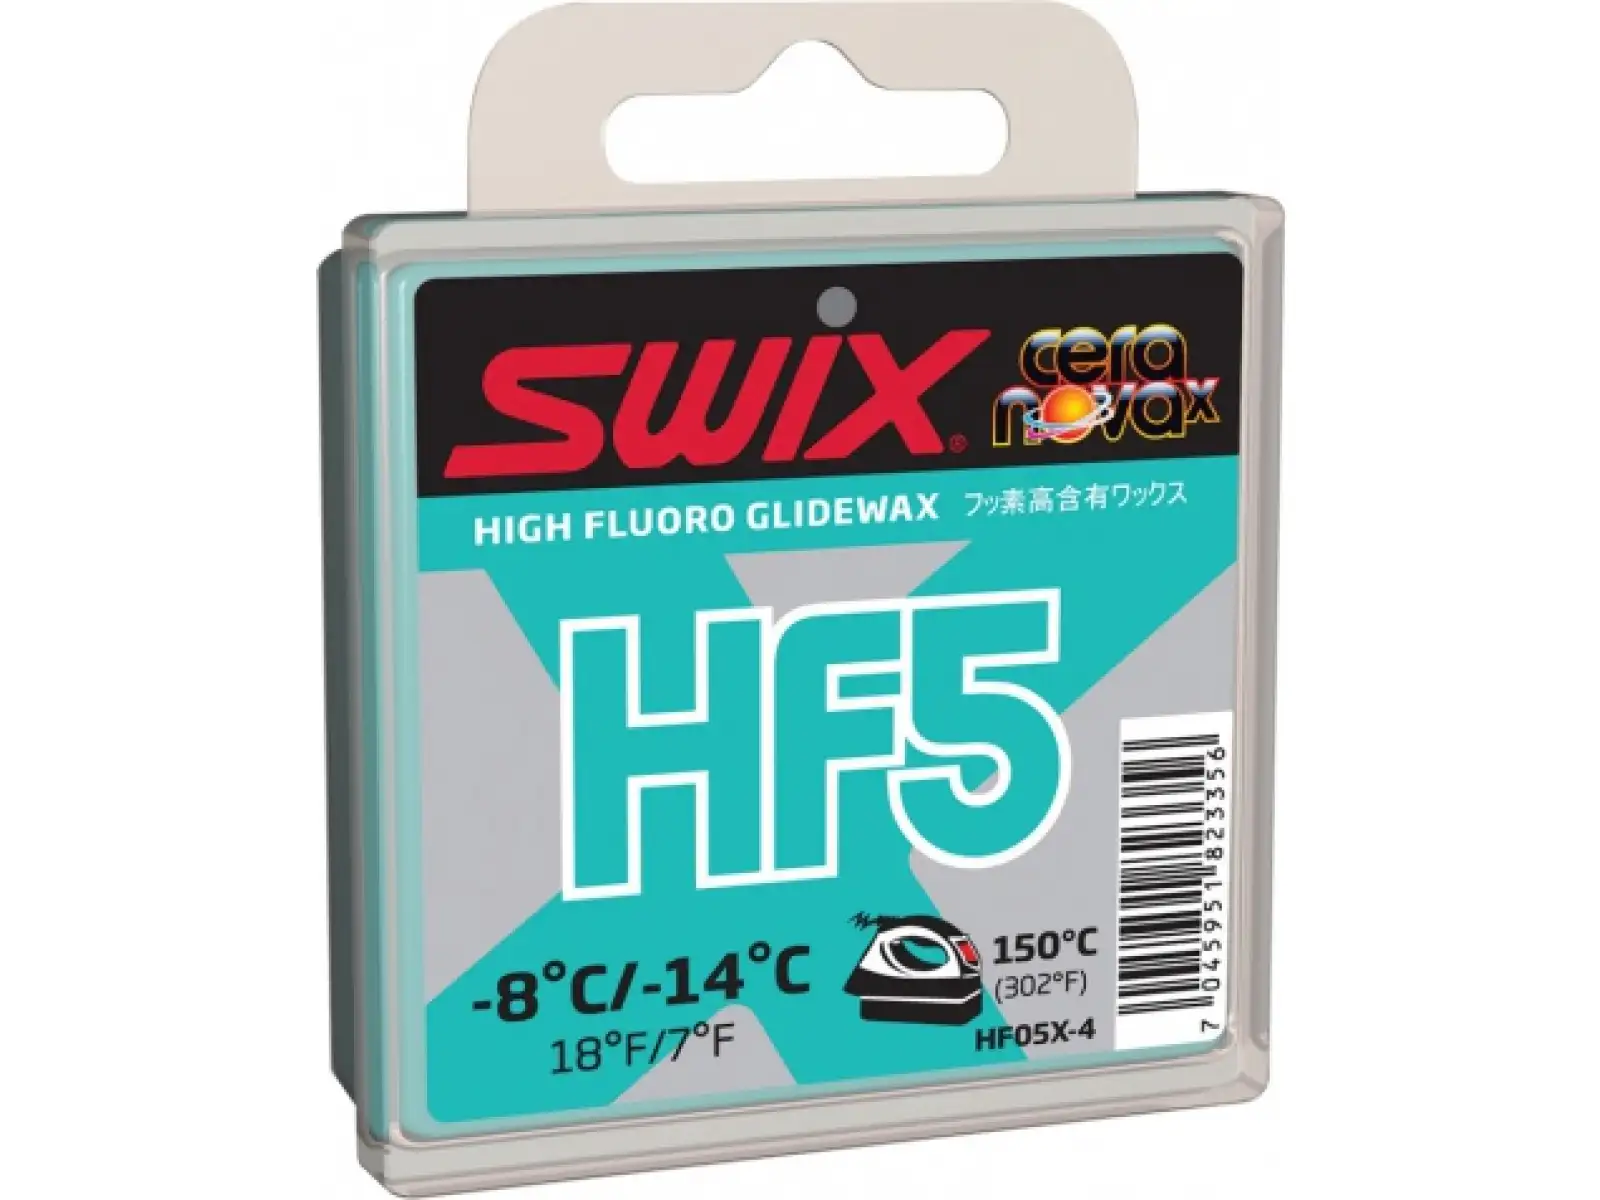 Swix HF5X klzný vosk 40 g